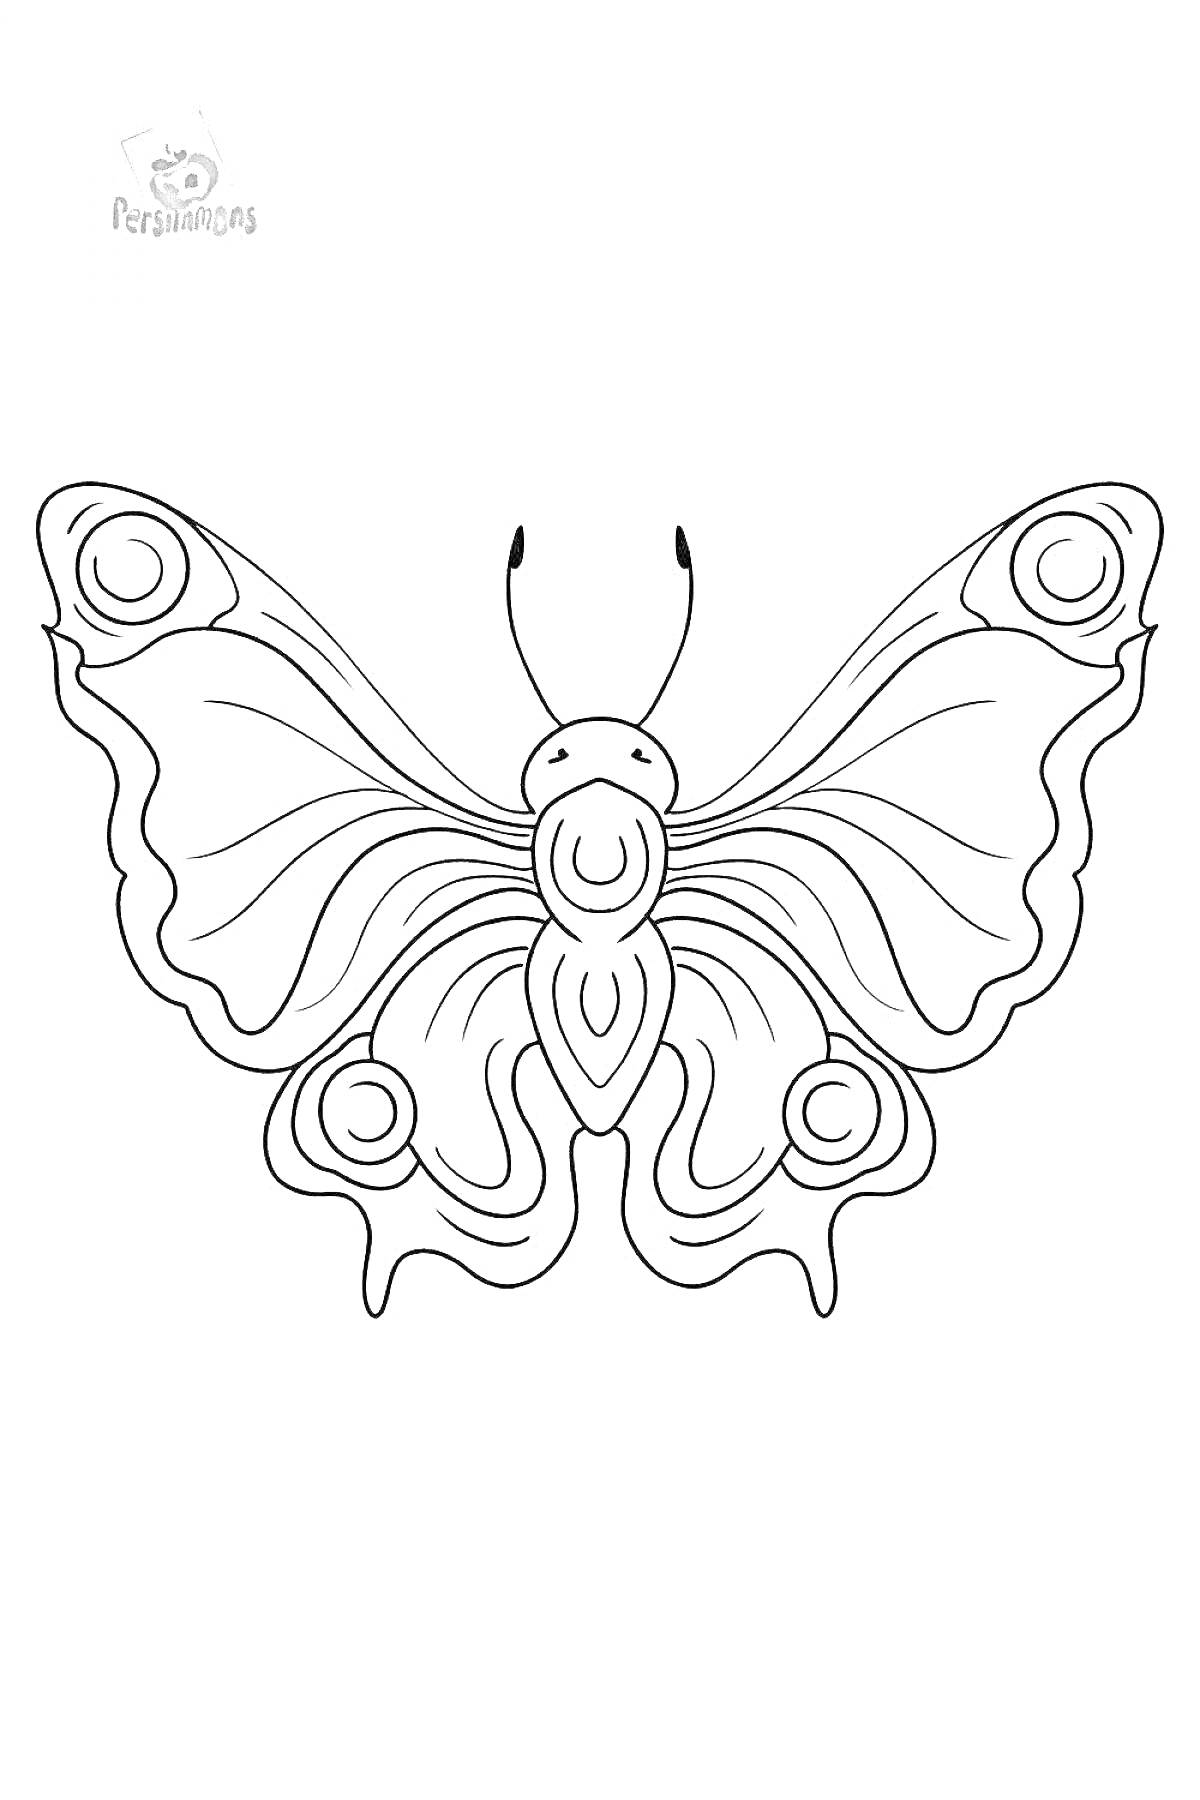 Раскраска Раскраска бабочка павлиний глаз со сложными узорами на крыльях